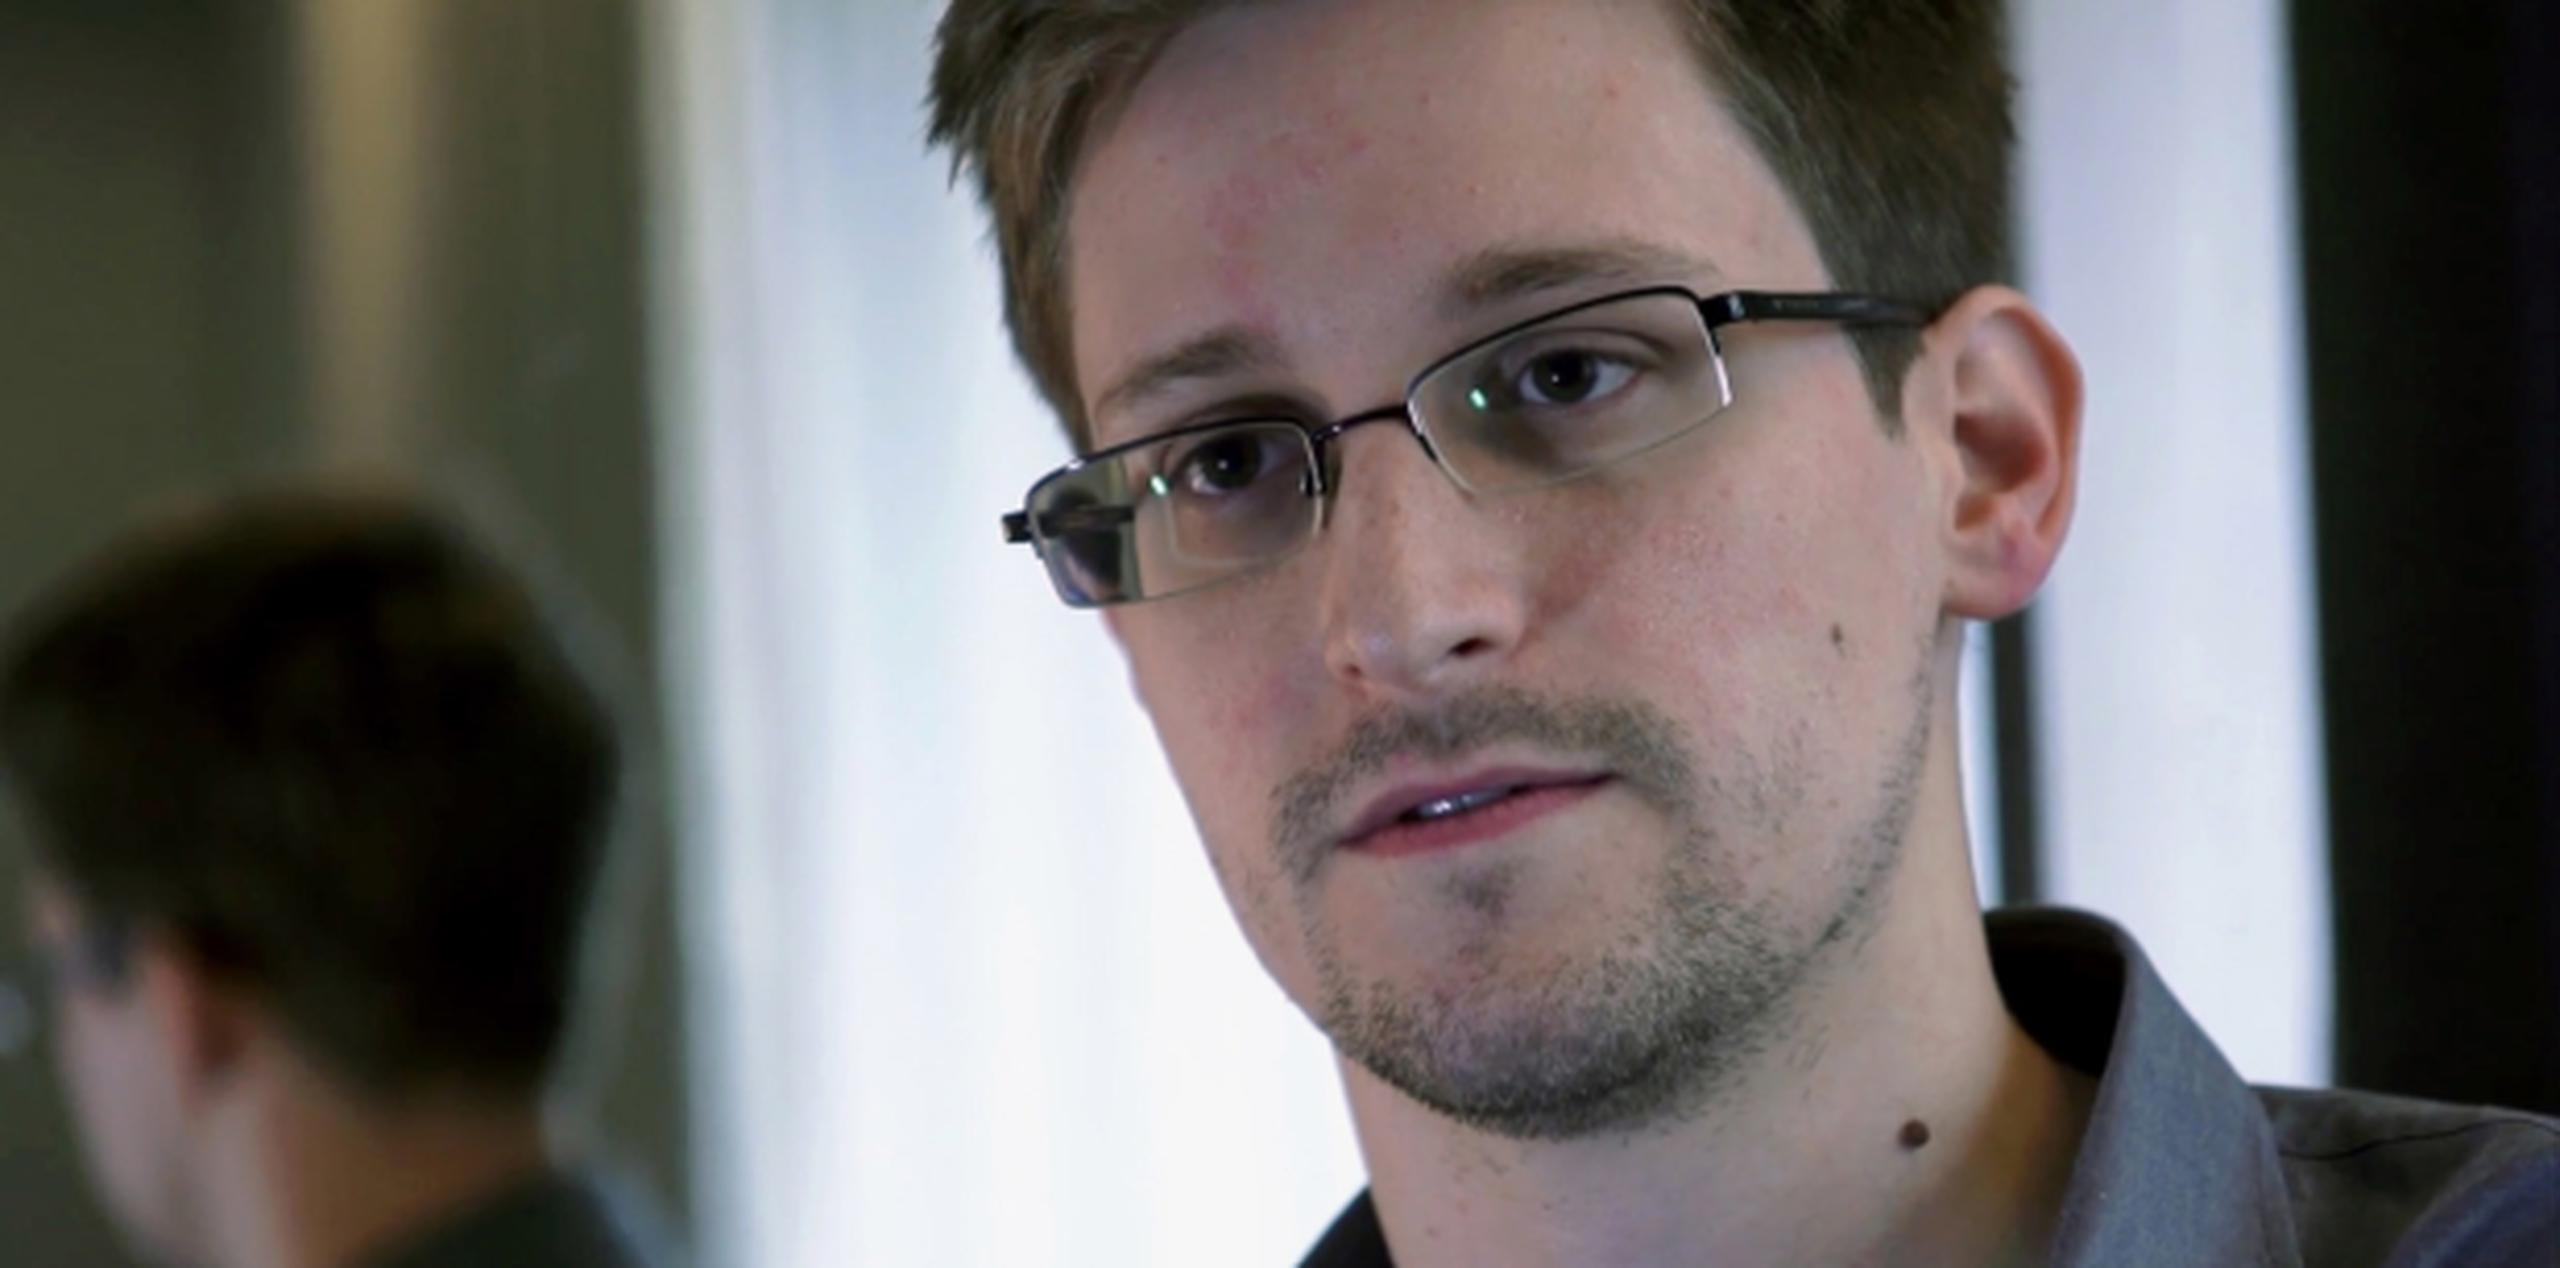 Snowden, que ha estado escondido en Hong Kong durante varias semanas desde que se reveló información sobre los programas de espionaje secreto, ha hablado de buscar asilo en Islandia. (AP/The Guardian)